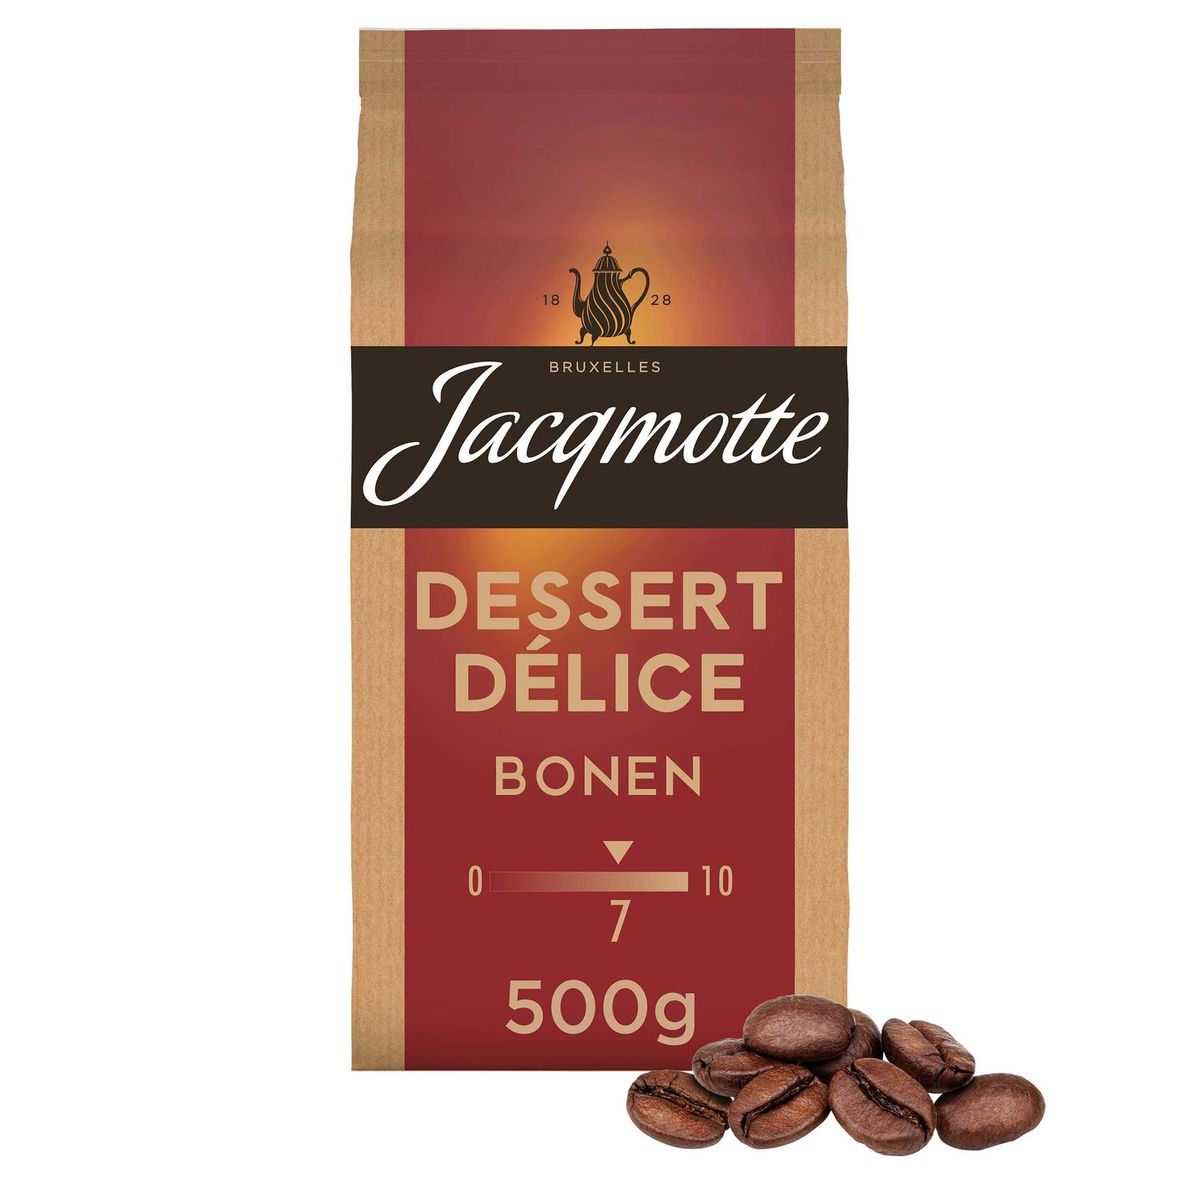 Jacqmotte Café Grain Dessert Delice 500g